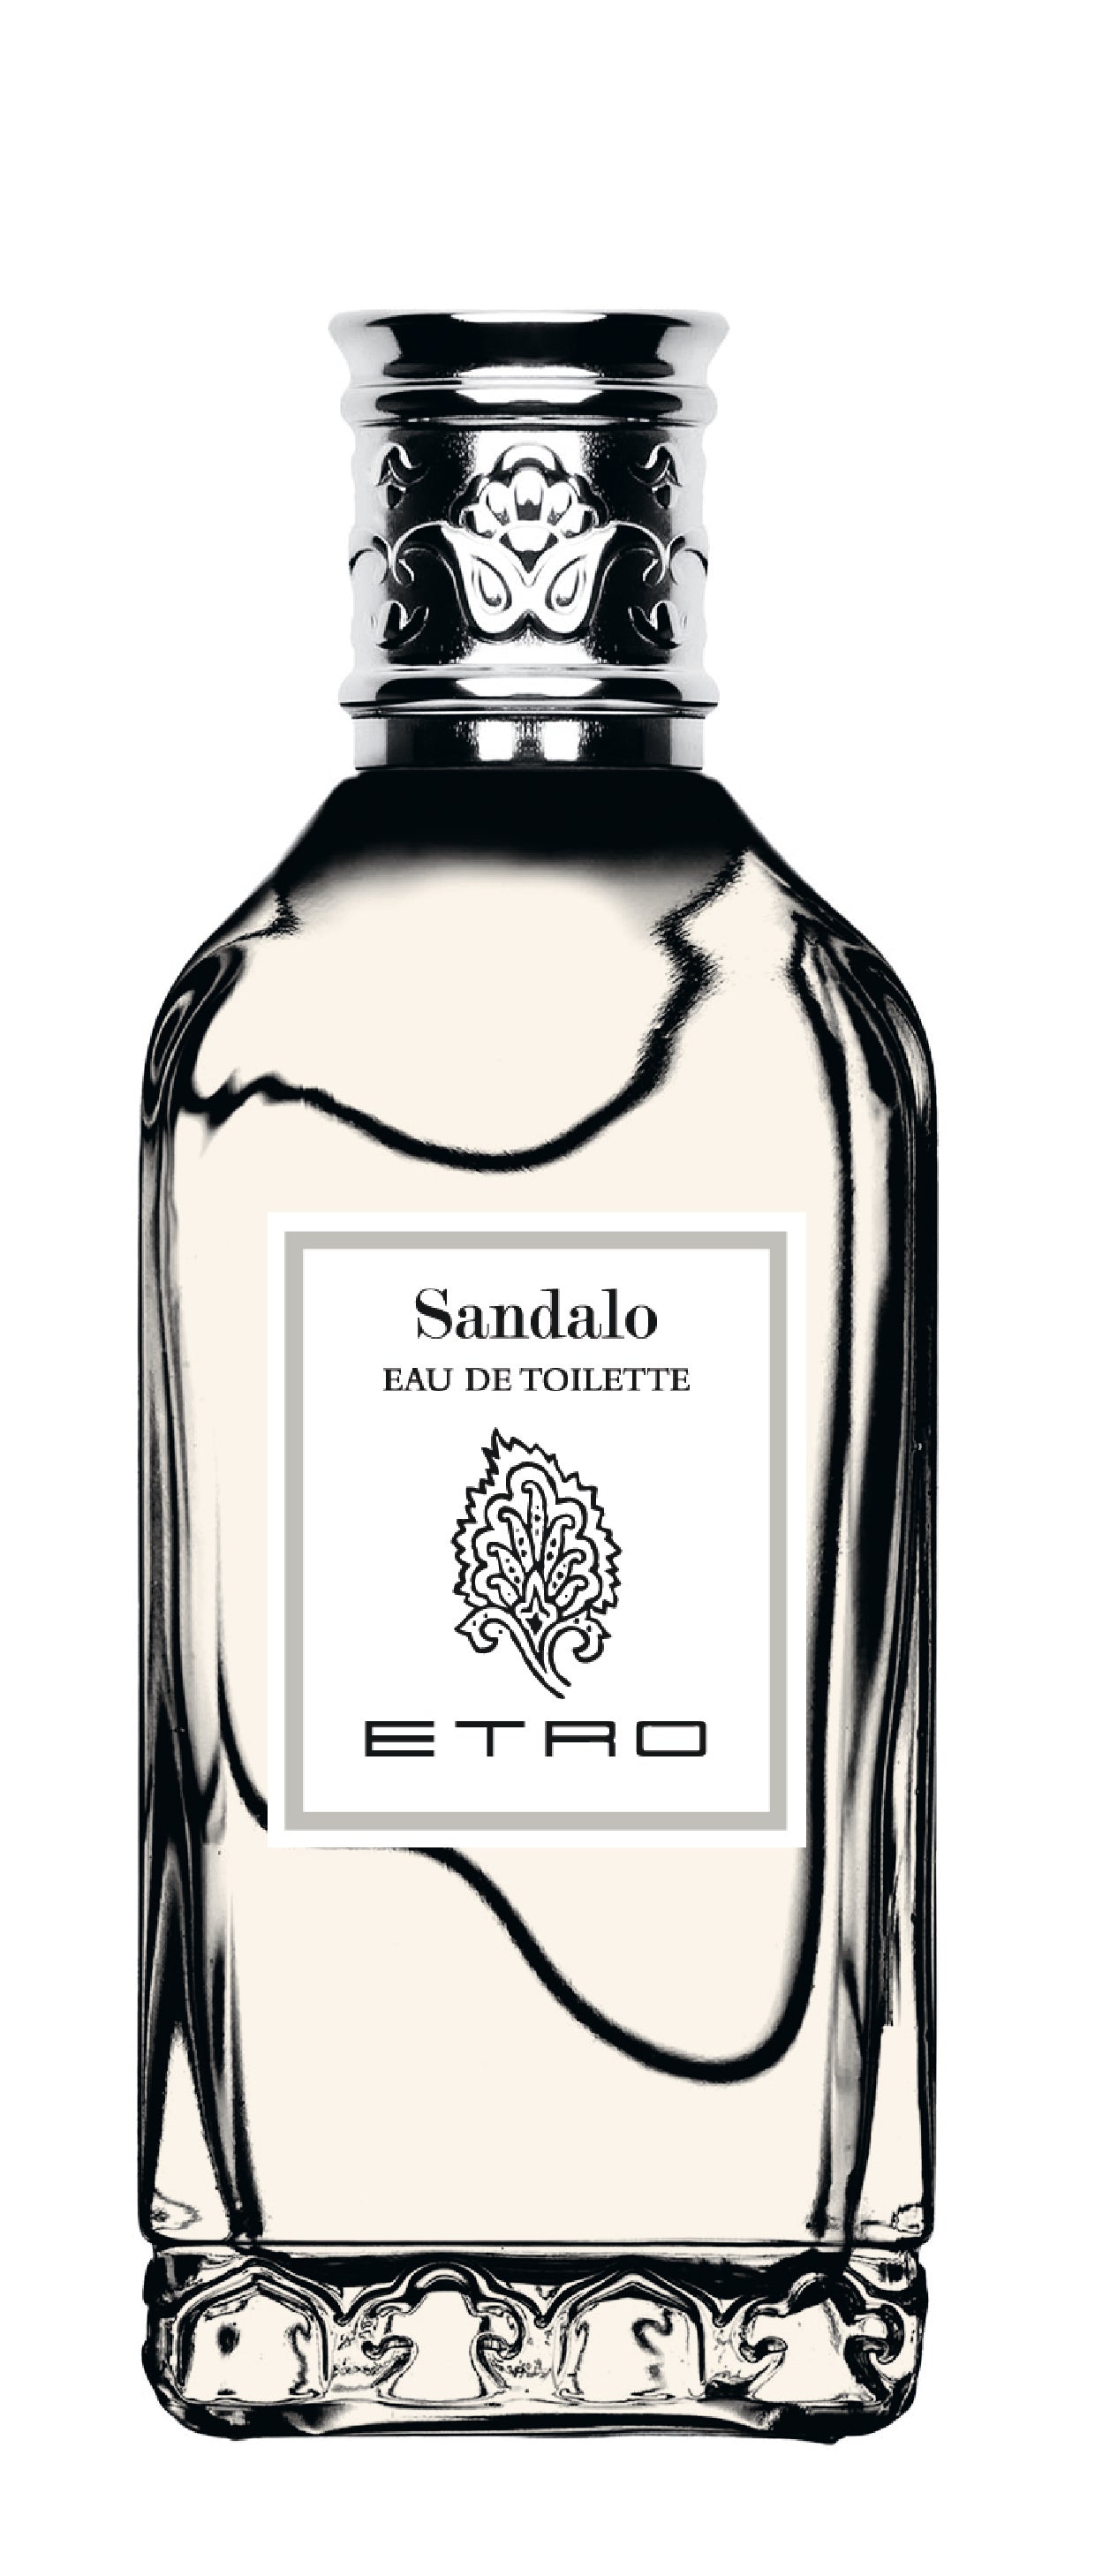 ETRO - SANDALO EAU DE TOILETTE - Carillon Profumeria